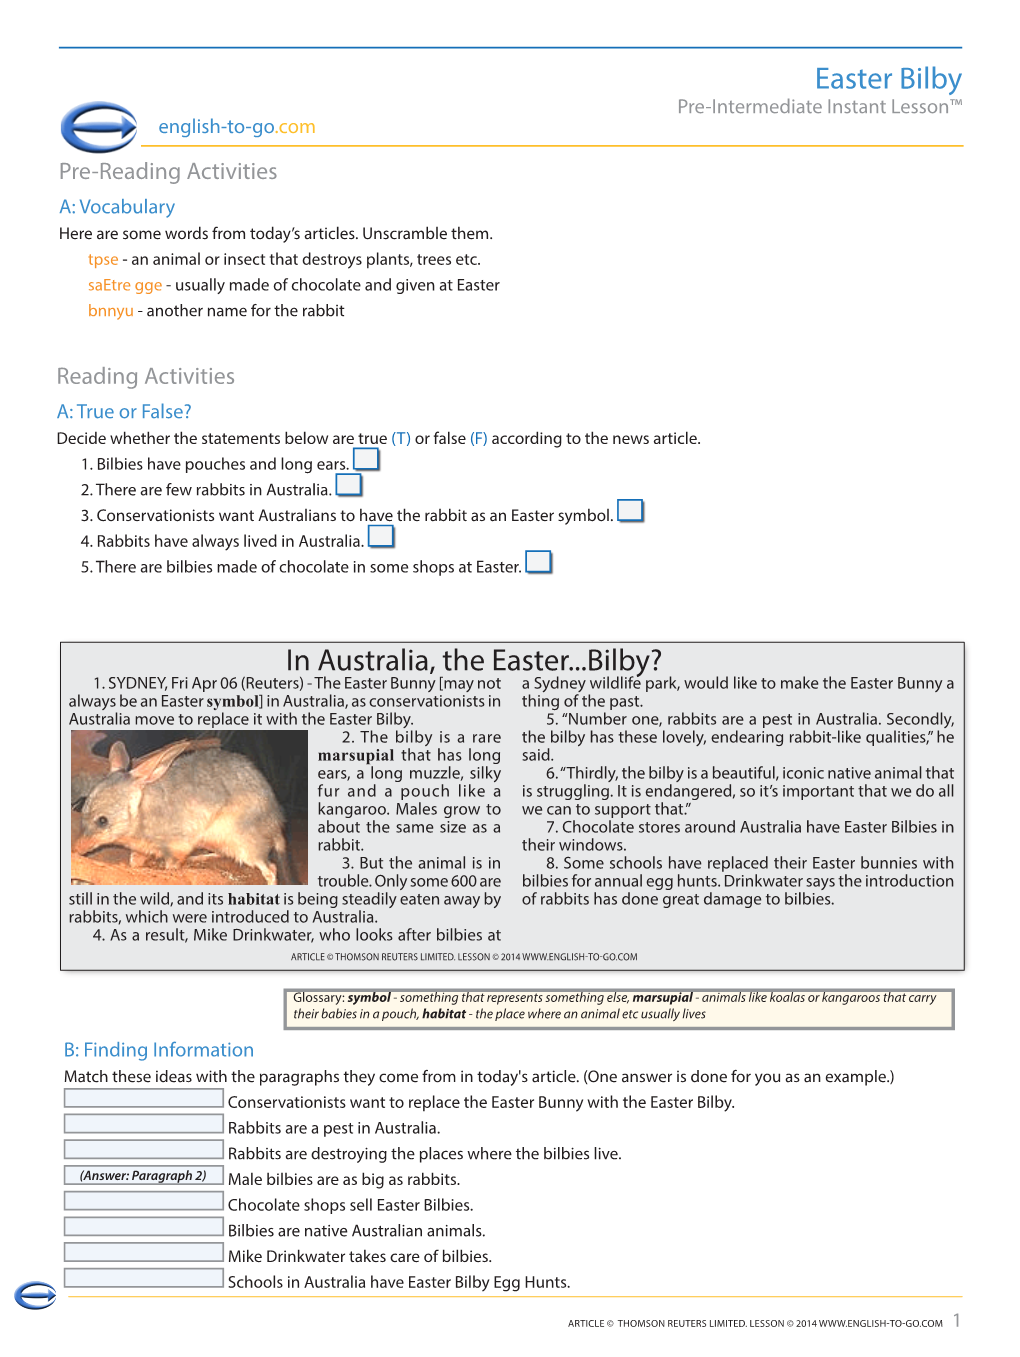 Easter Bilby in Australia, the Easter...Bilby?